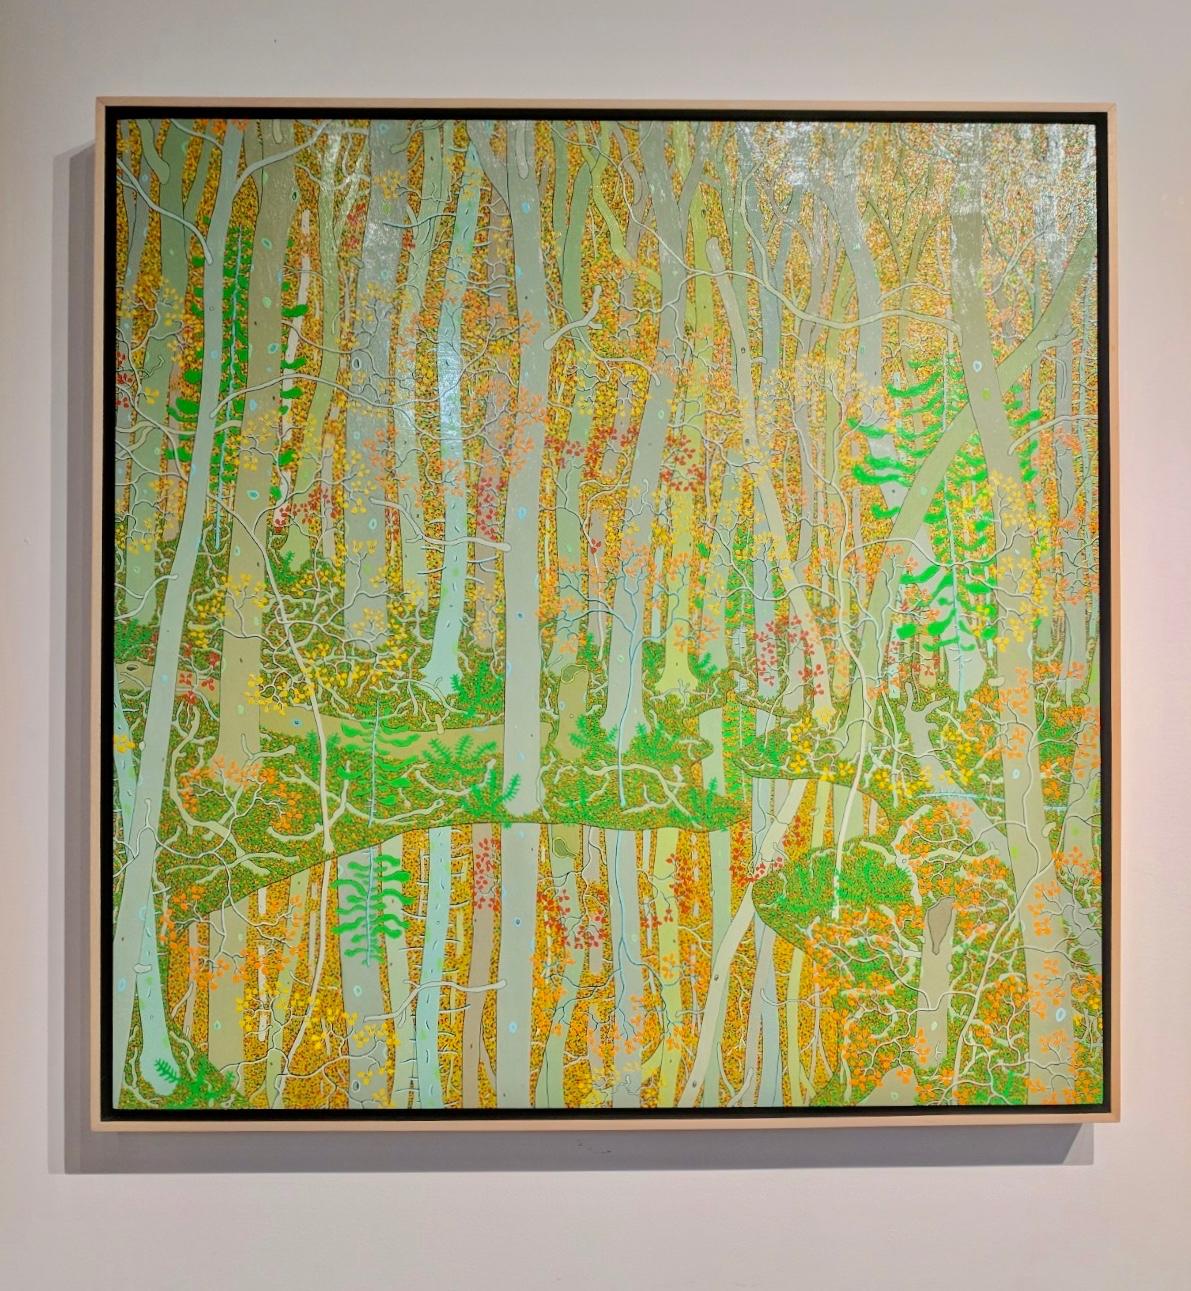 Reflections at the Spring's Entrance (Réflections à l'entrée du printemps), paysage forêt, beige, orange, vert - Painting de Gregory Hennen